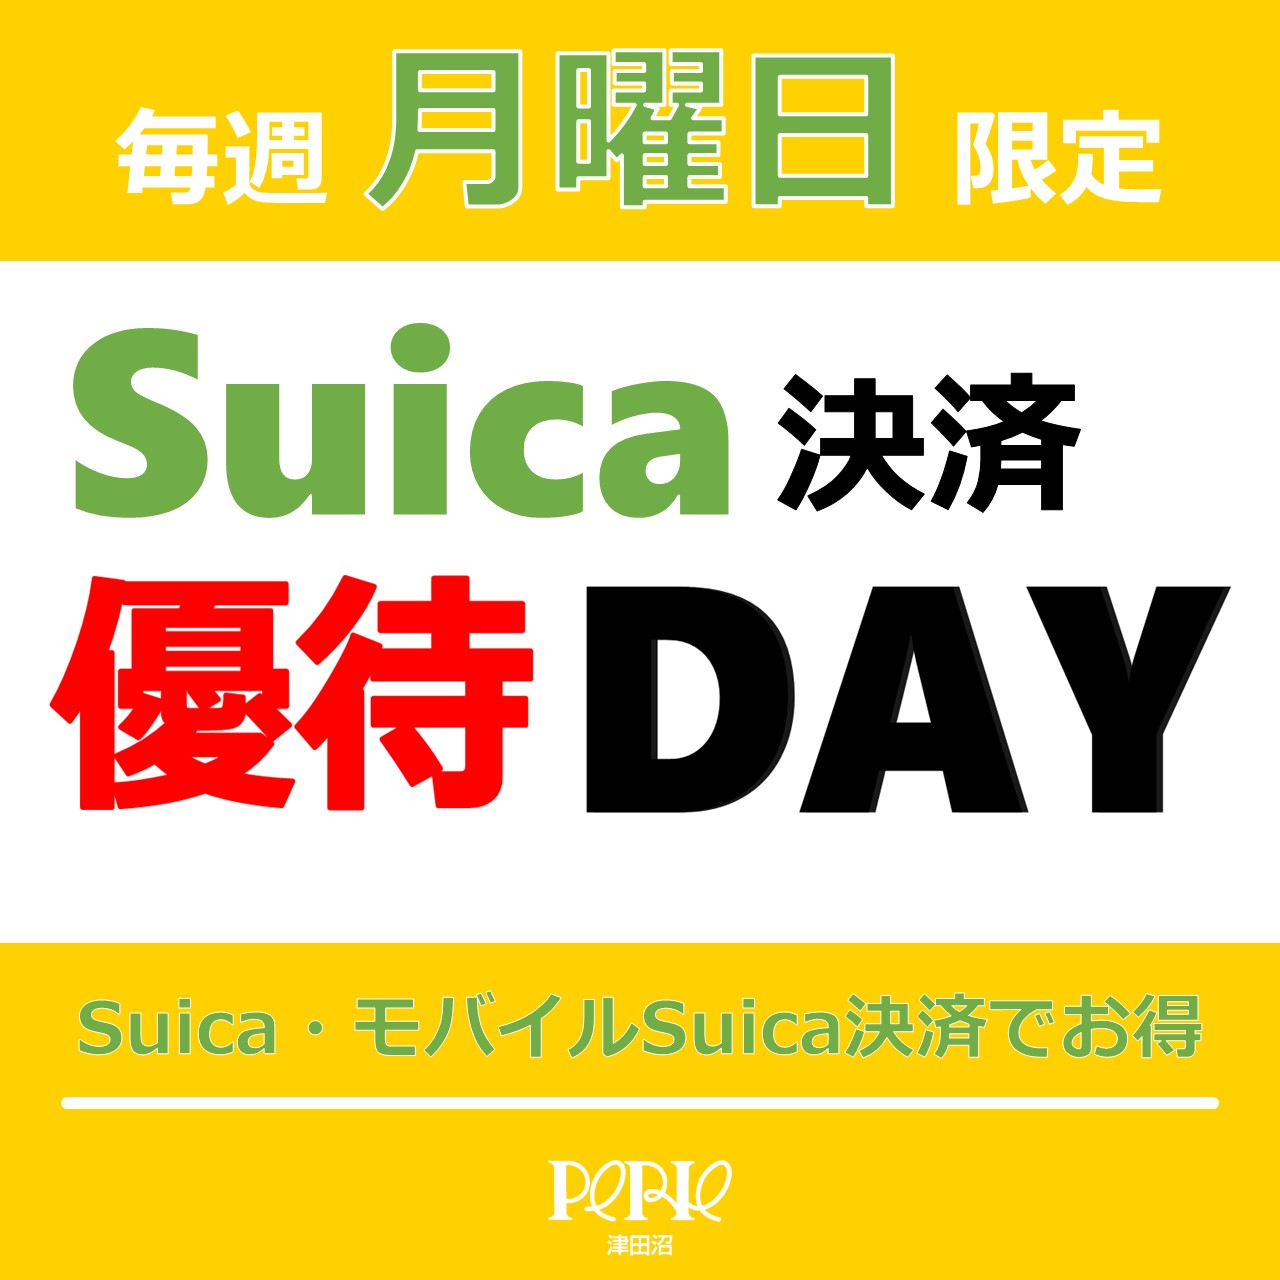 【毎週月曜日限定】Suica優待優待DAY